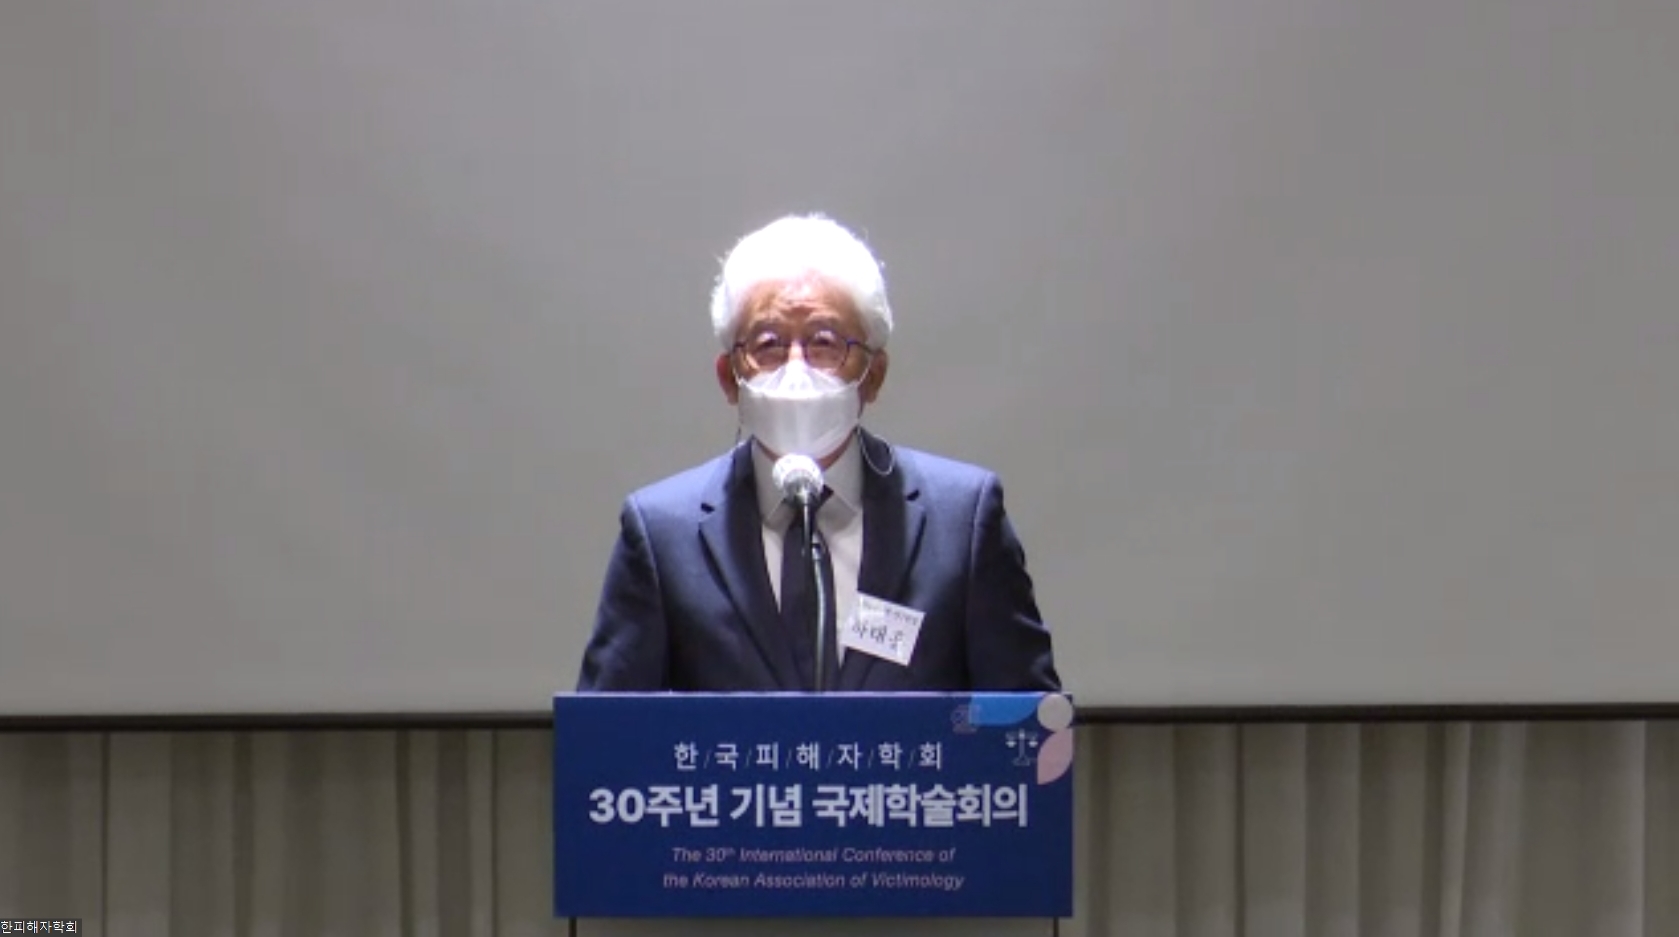 한국형사·법무정책연구원-한국피해자학회 30주년 기념 국제학술회의 개최3